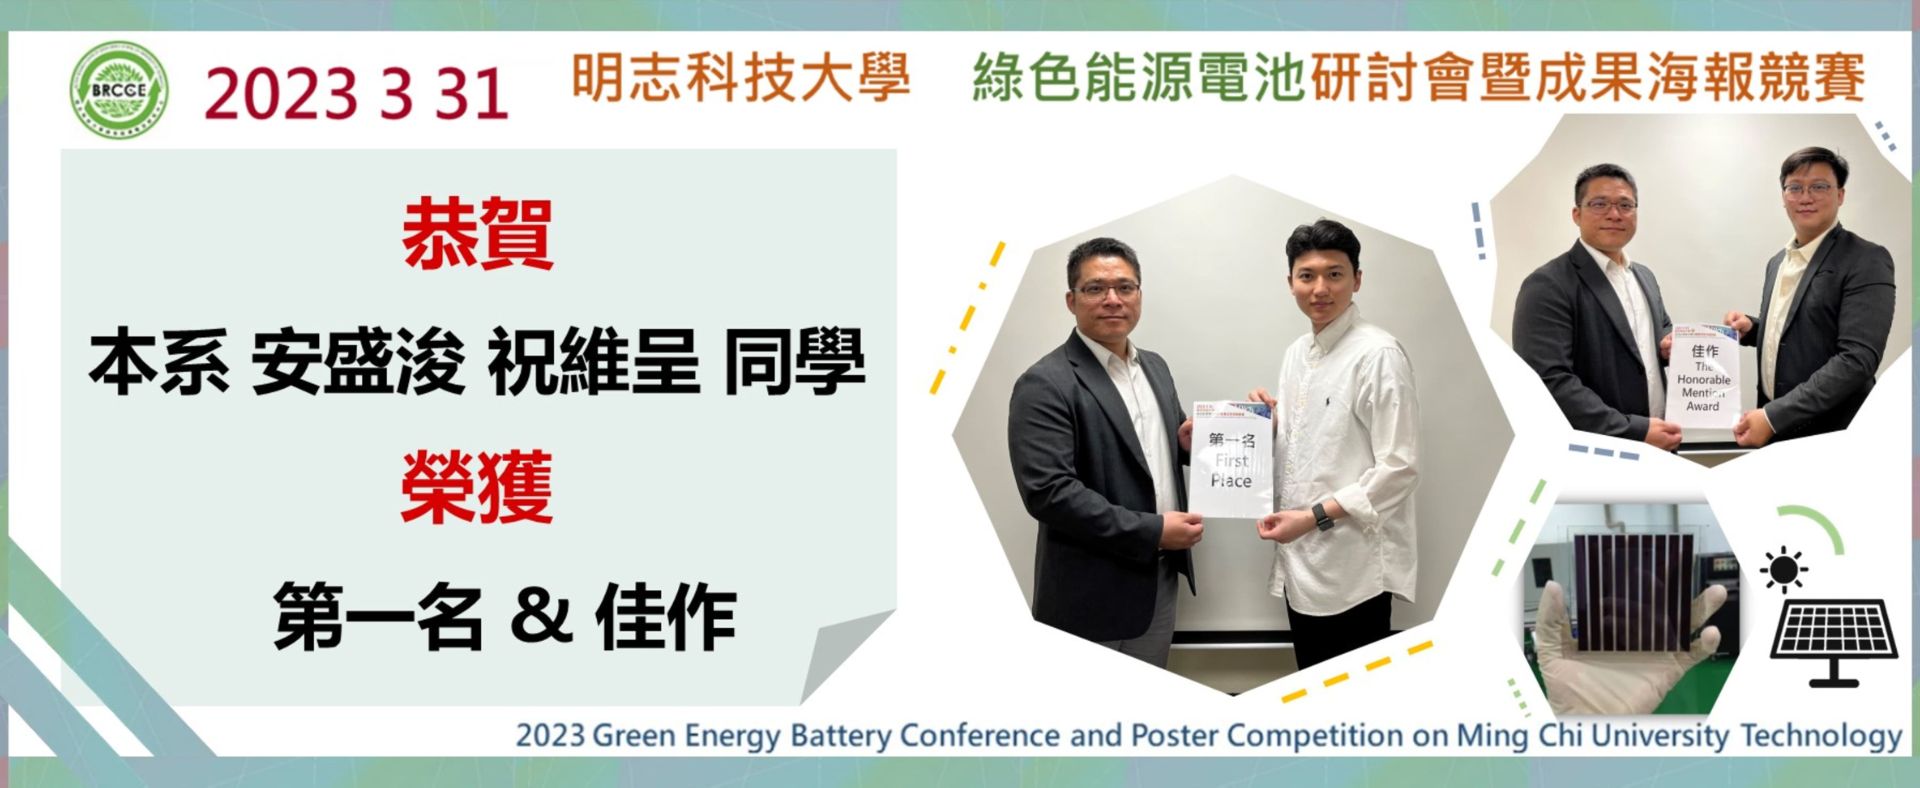 綠色能源電池研討會暨成果海報競賽